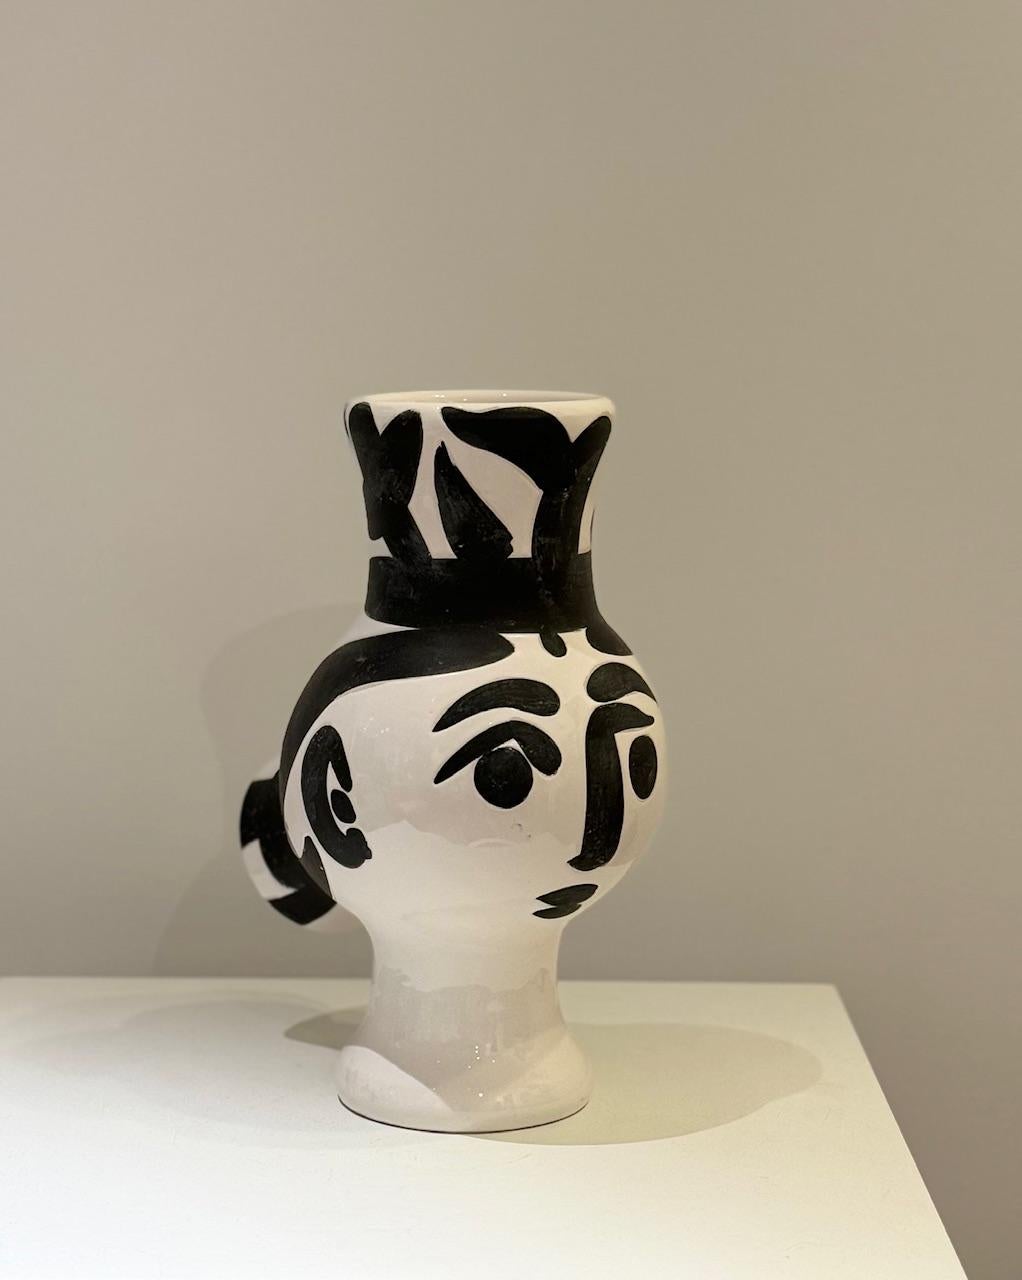 Picasso ( 1881-1973 ) Vase - 1951 (AR # 119)
Vase Terre de faïence, bemalt und teilweise glasiert, aus einer Auflage von 500 Stück,  gestempelt 